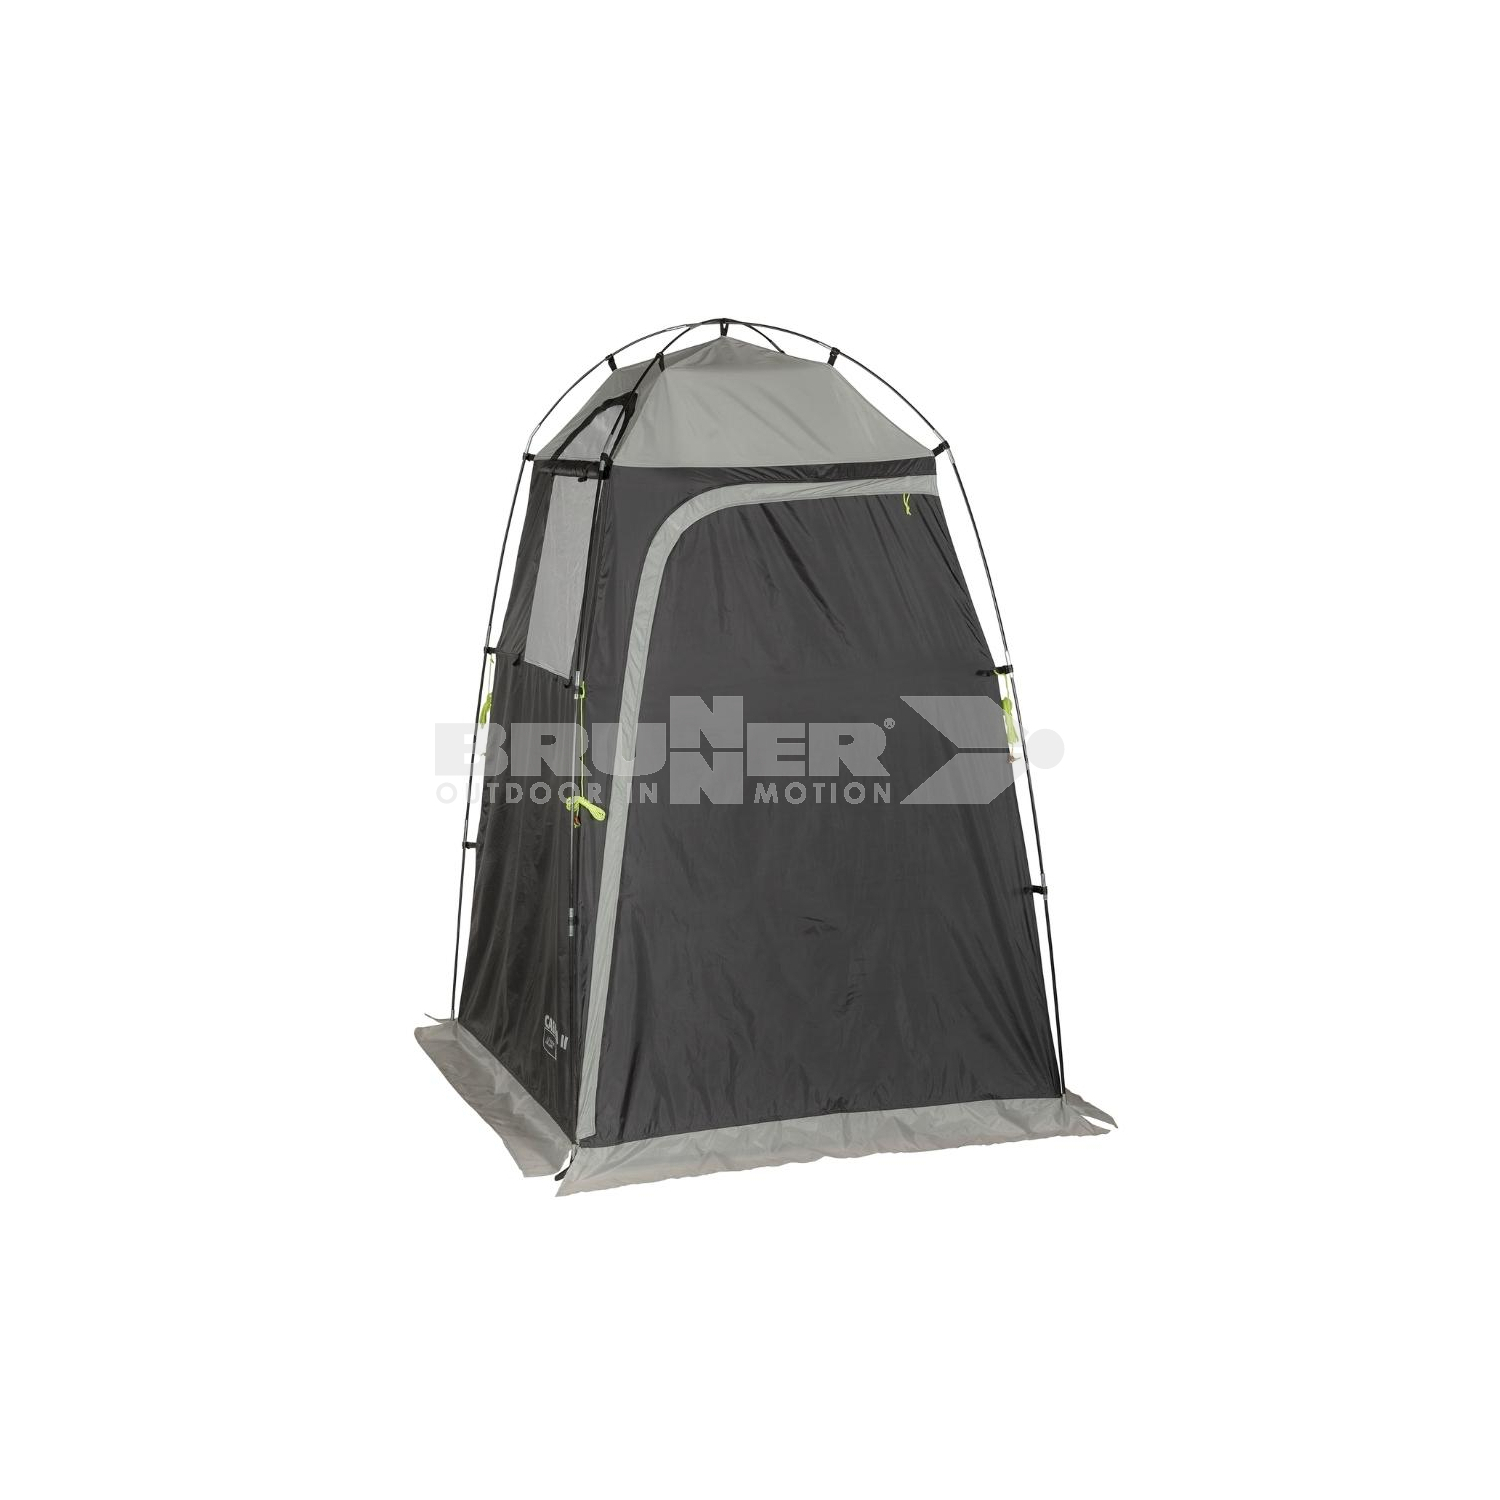 Camping Brunner Duschzelt Beistellzelt Zelt Gerätezelt CABINA MAXI 1,8x1,6x2m 